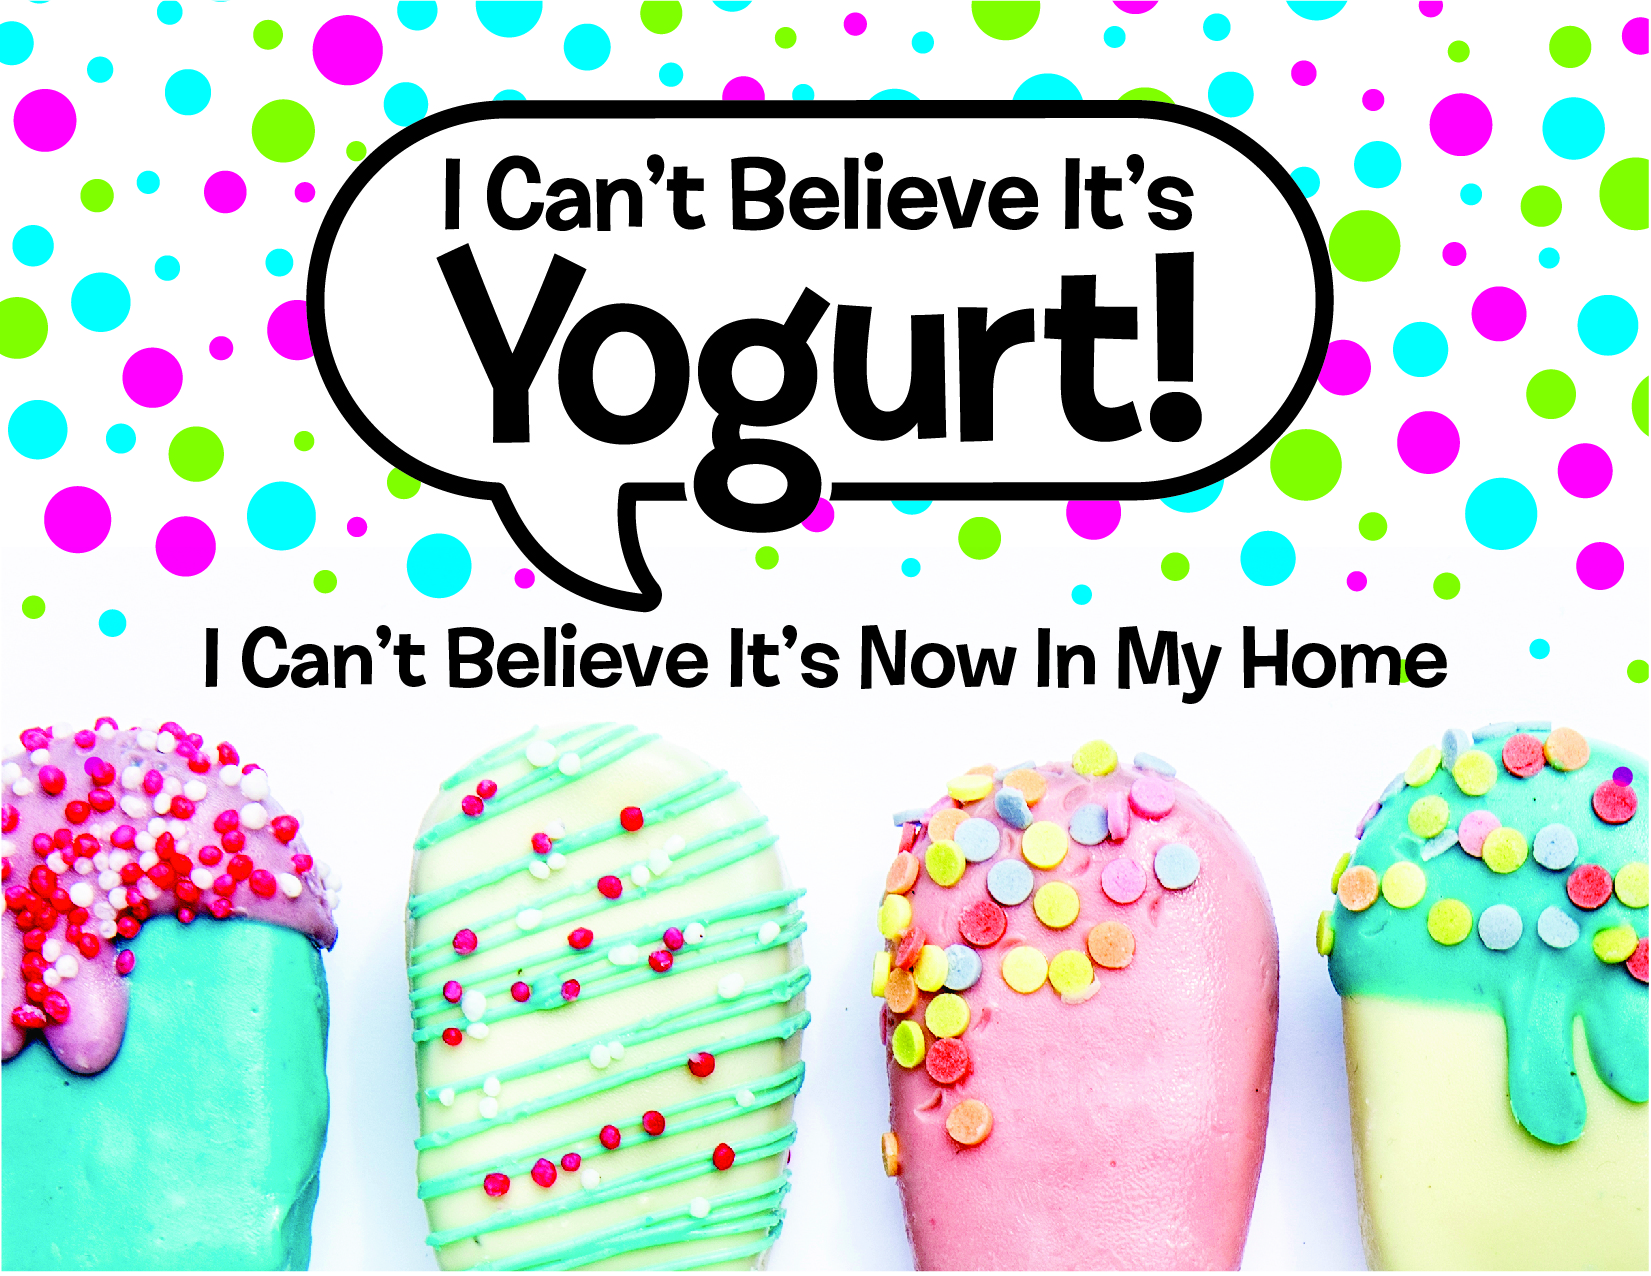 I Can’t Believe It’s Yogurt!